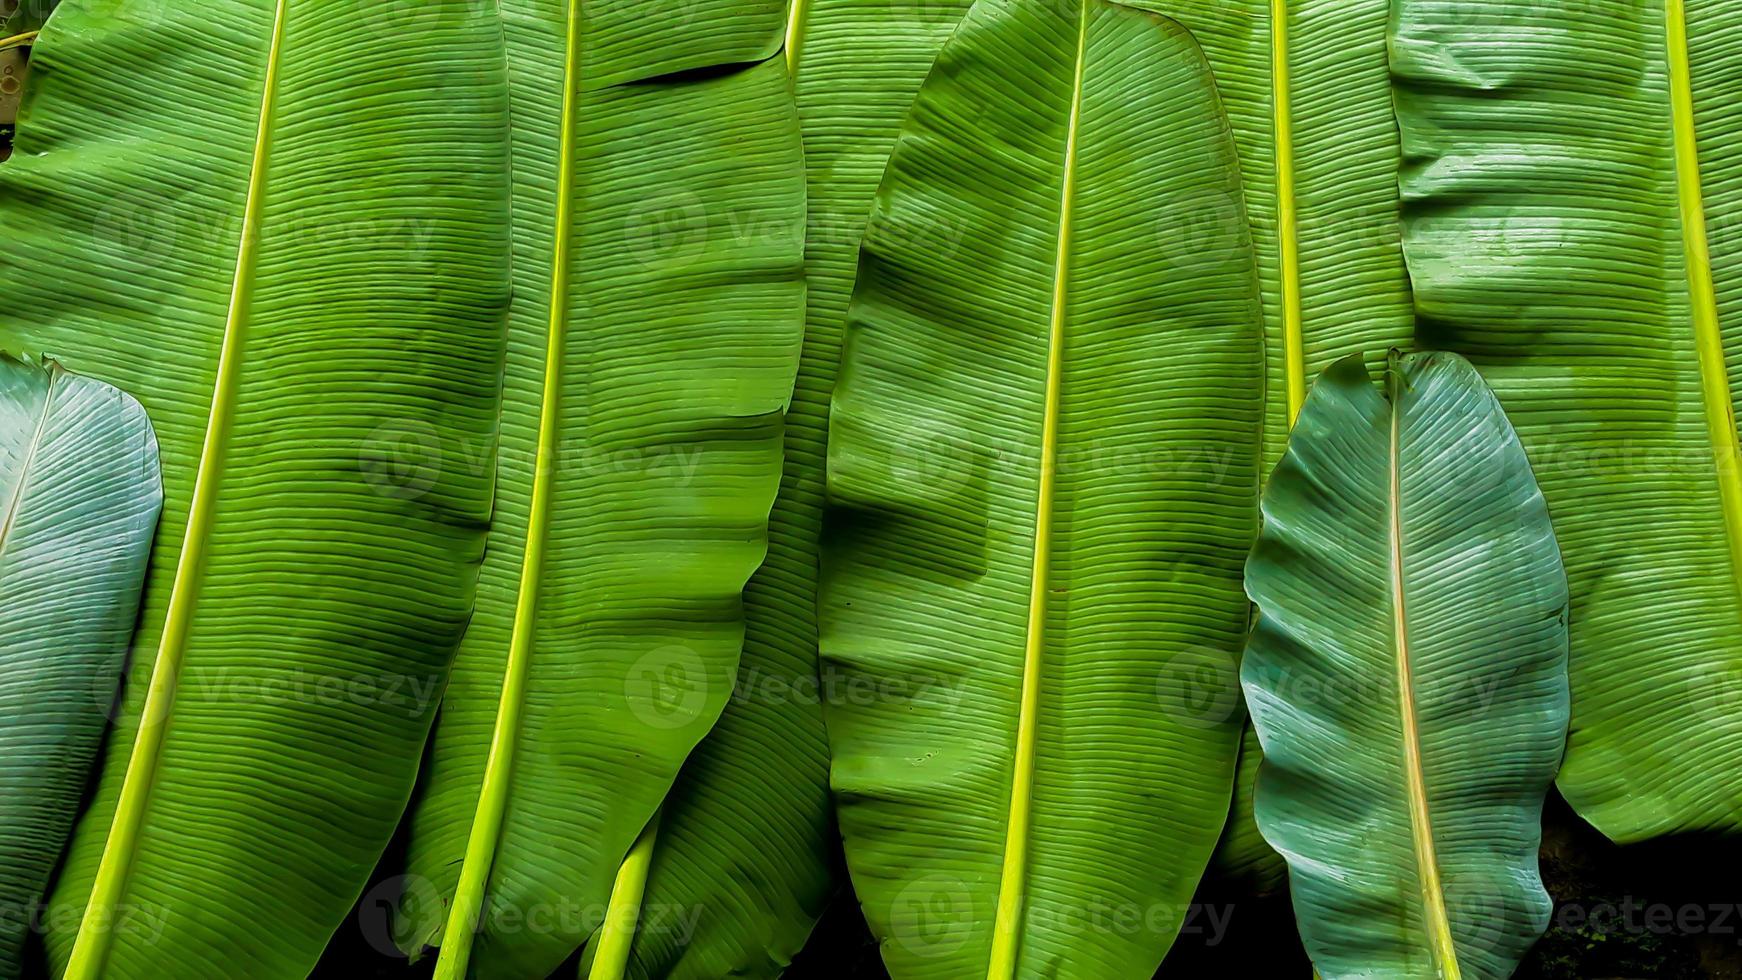 texture de feuilles de bananier, fond vert foncé photo